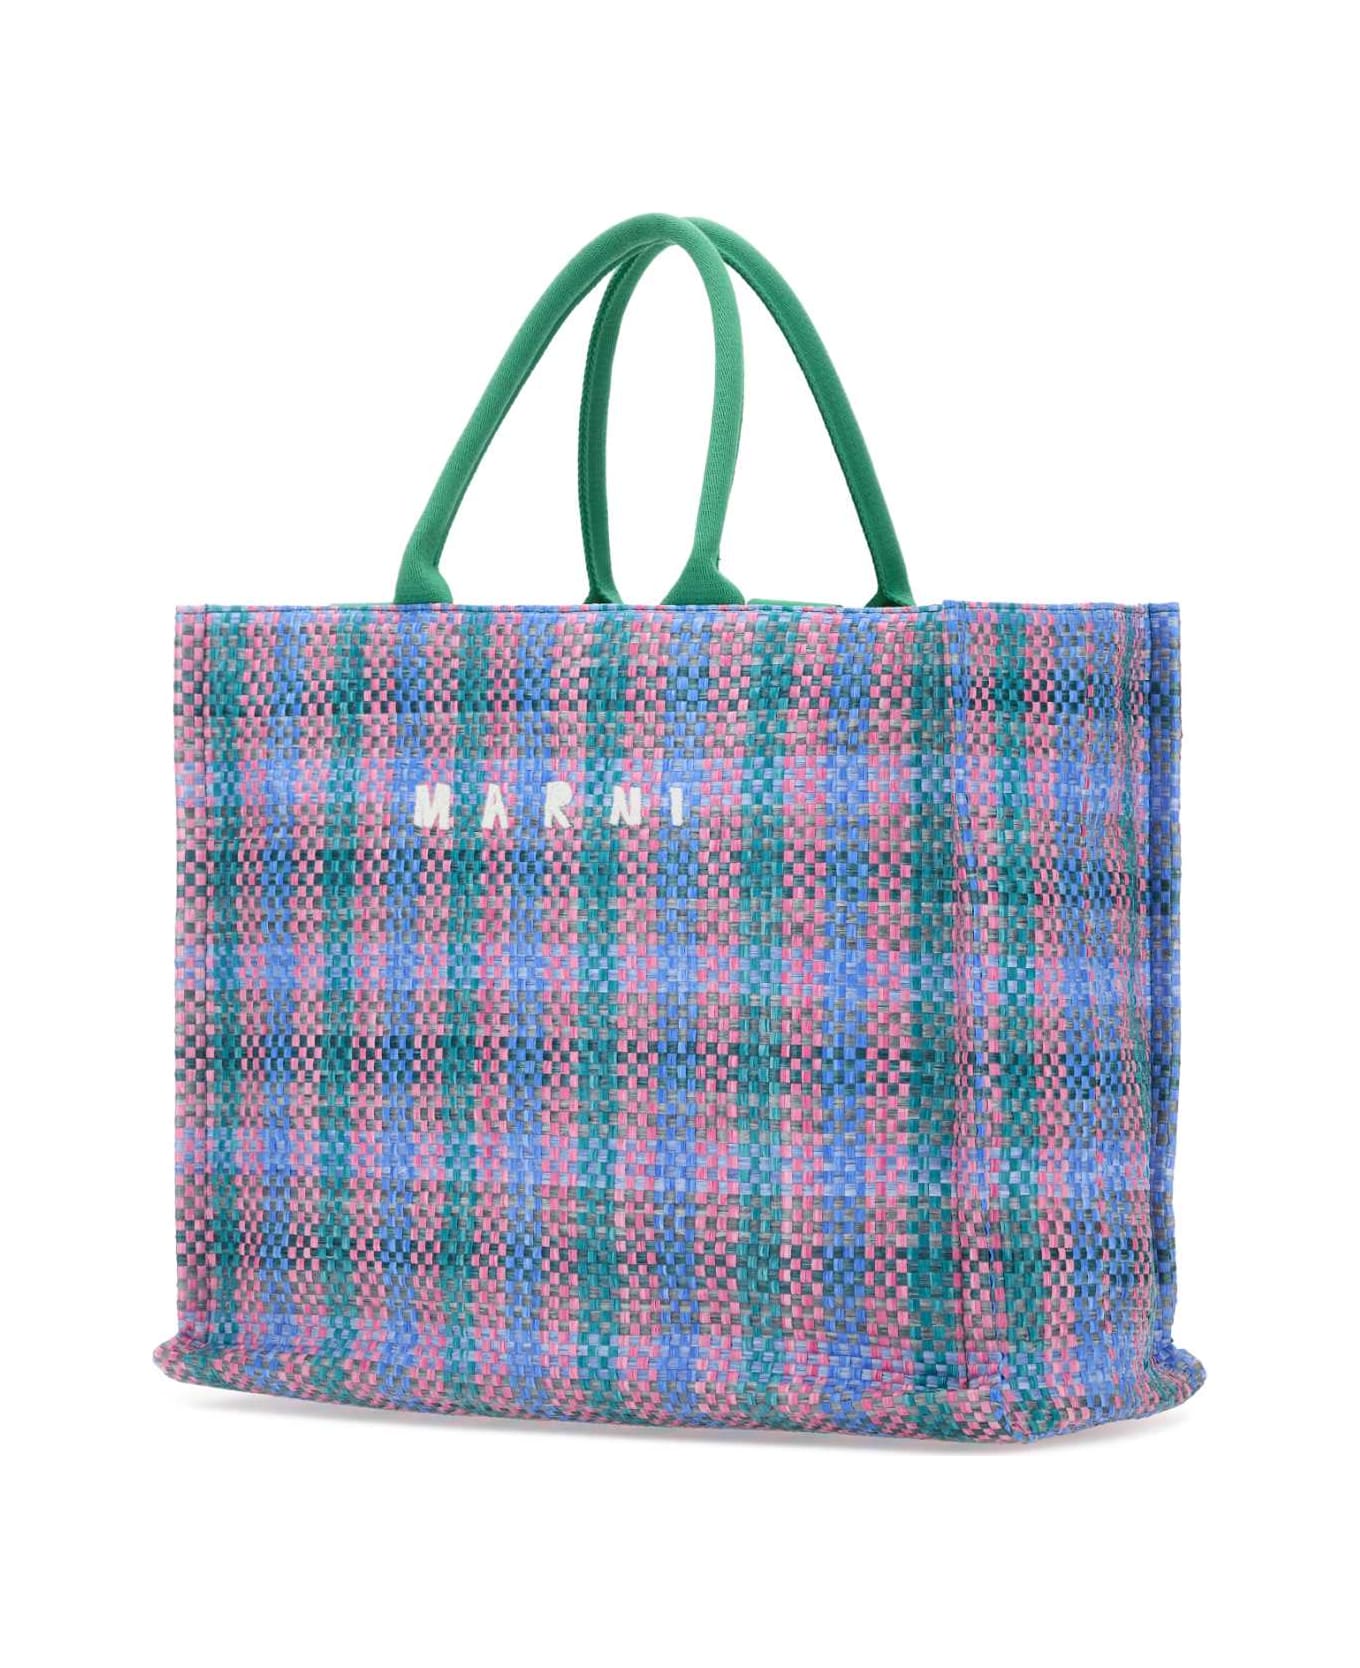 Marni Multicolor Raffia Big Shopping Bag - GREENFUCHSIACYPRESS